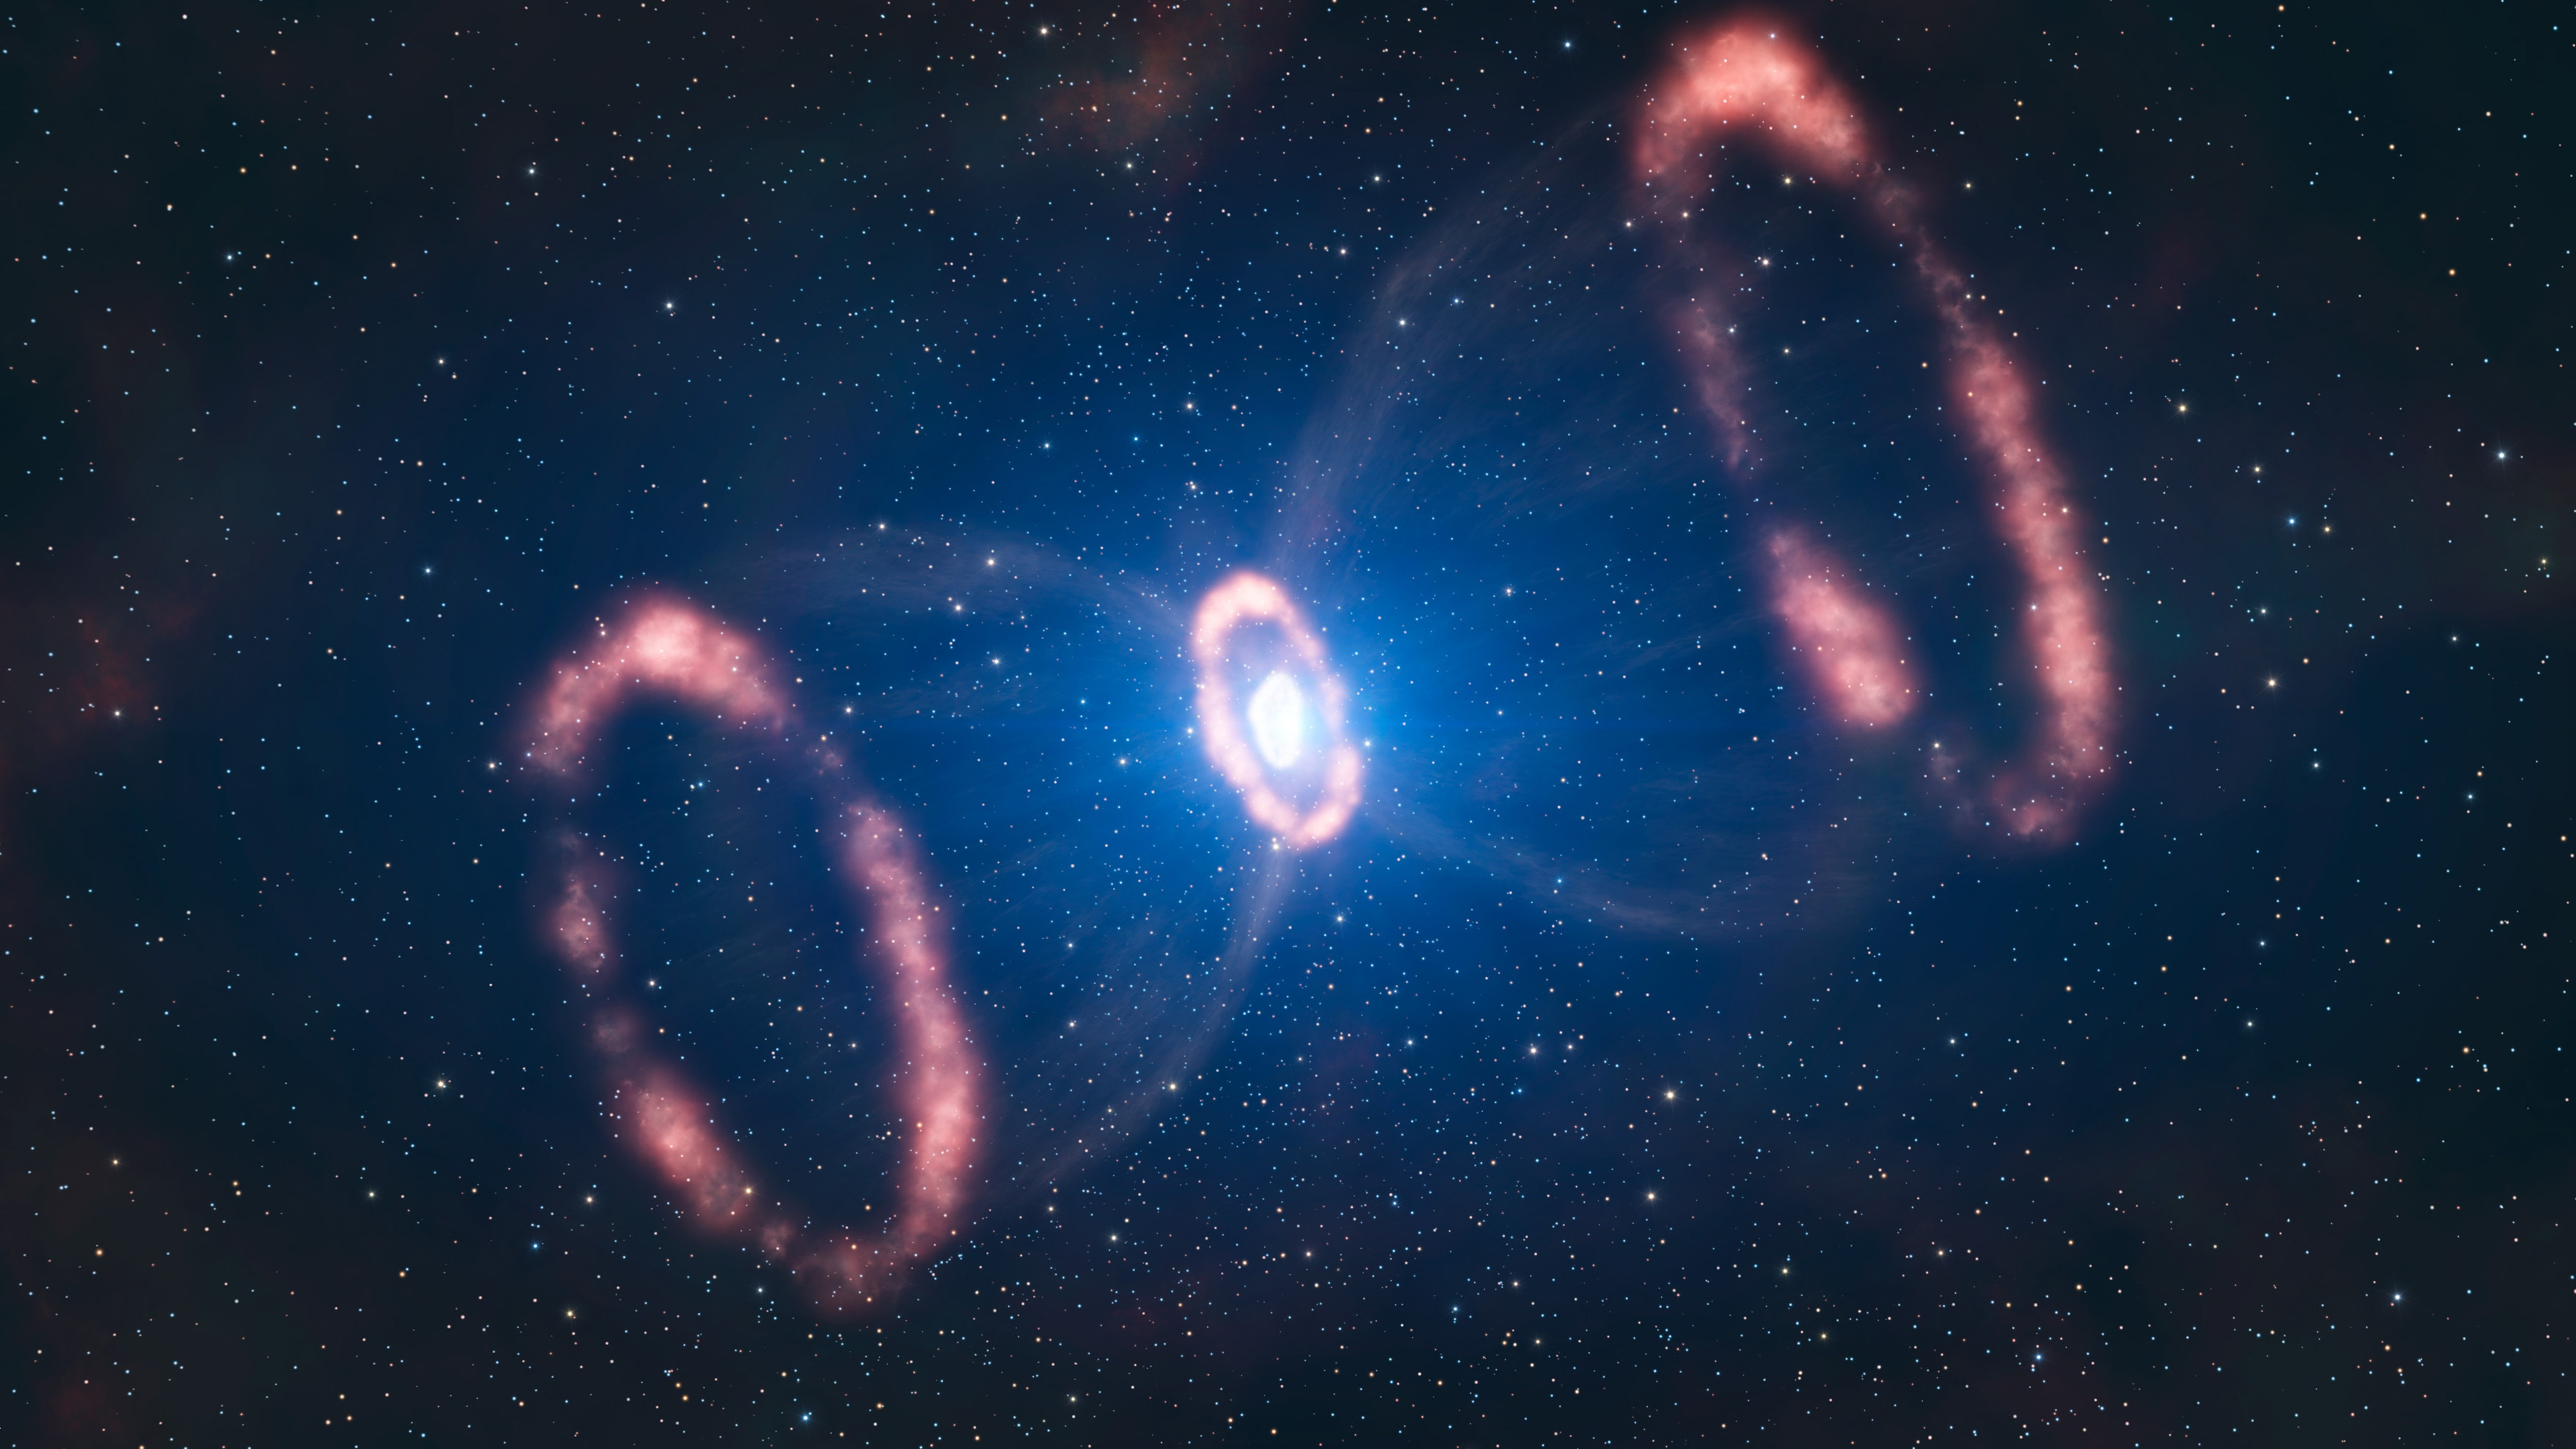 Supernova Pics, OQJ39 Collection